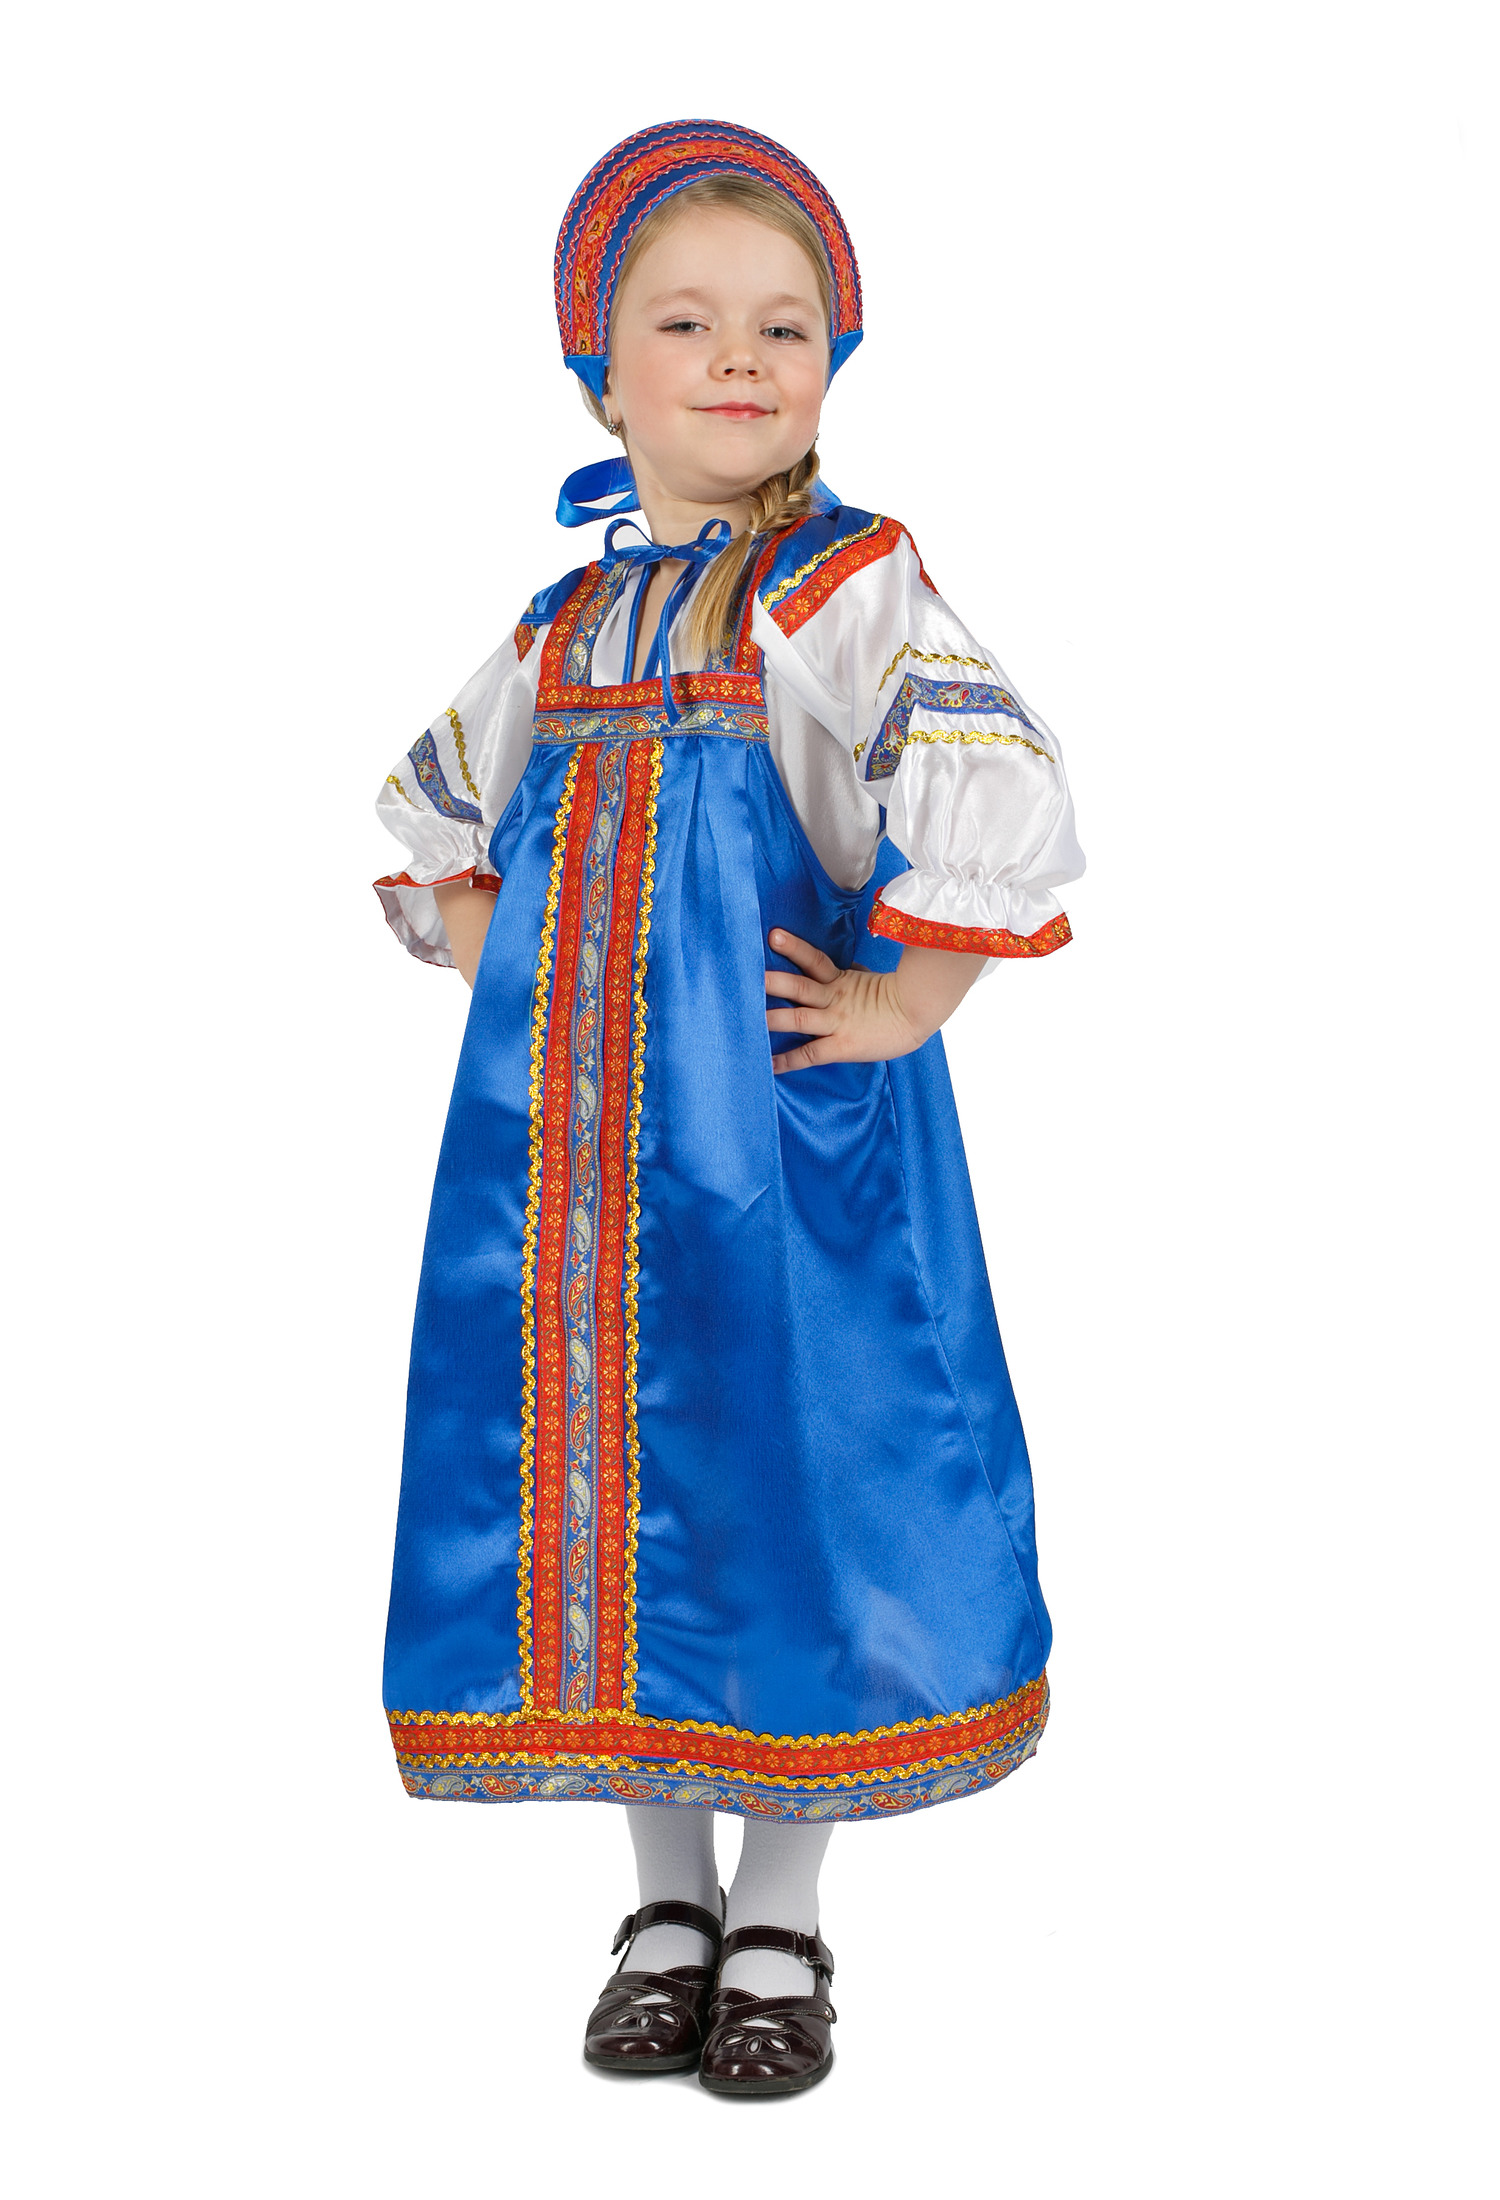 Русский костюм